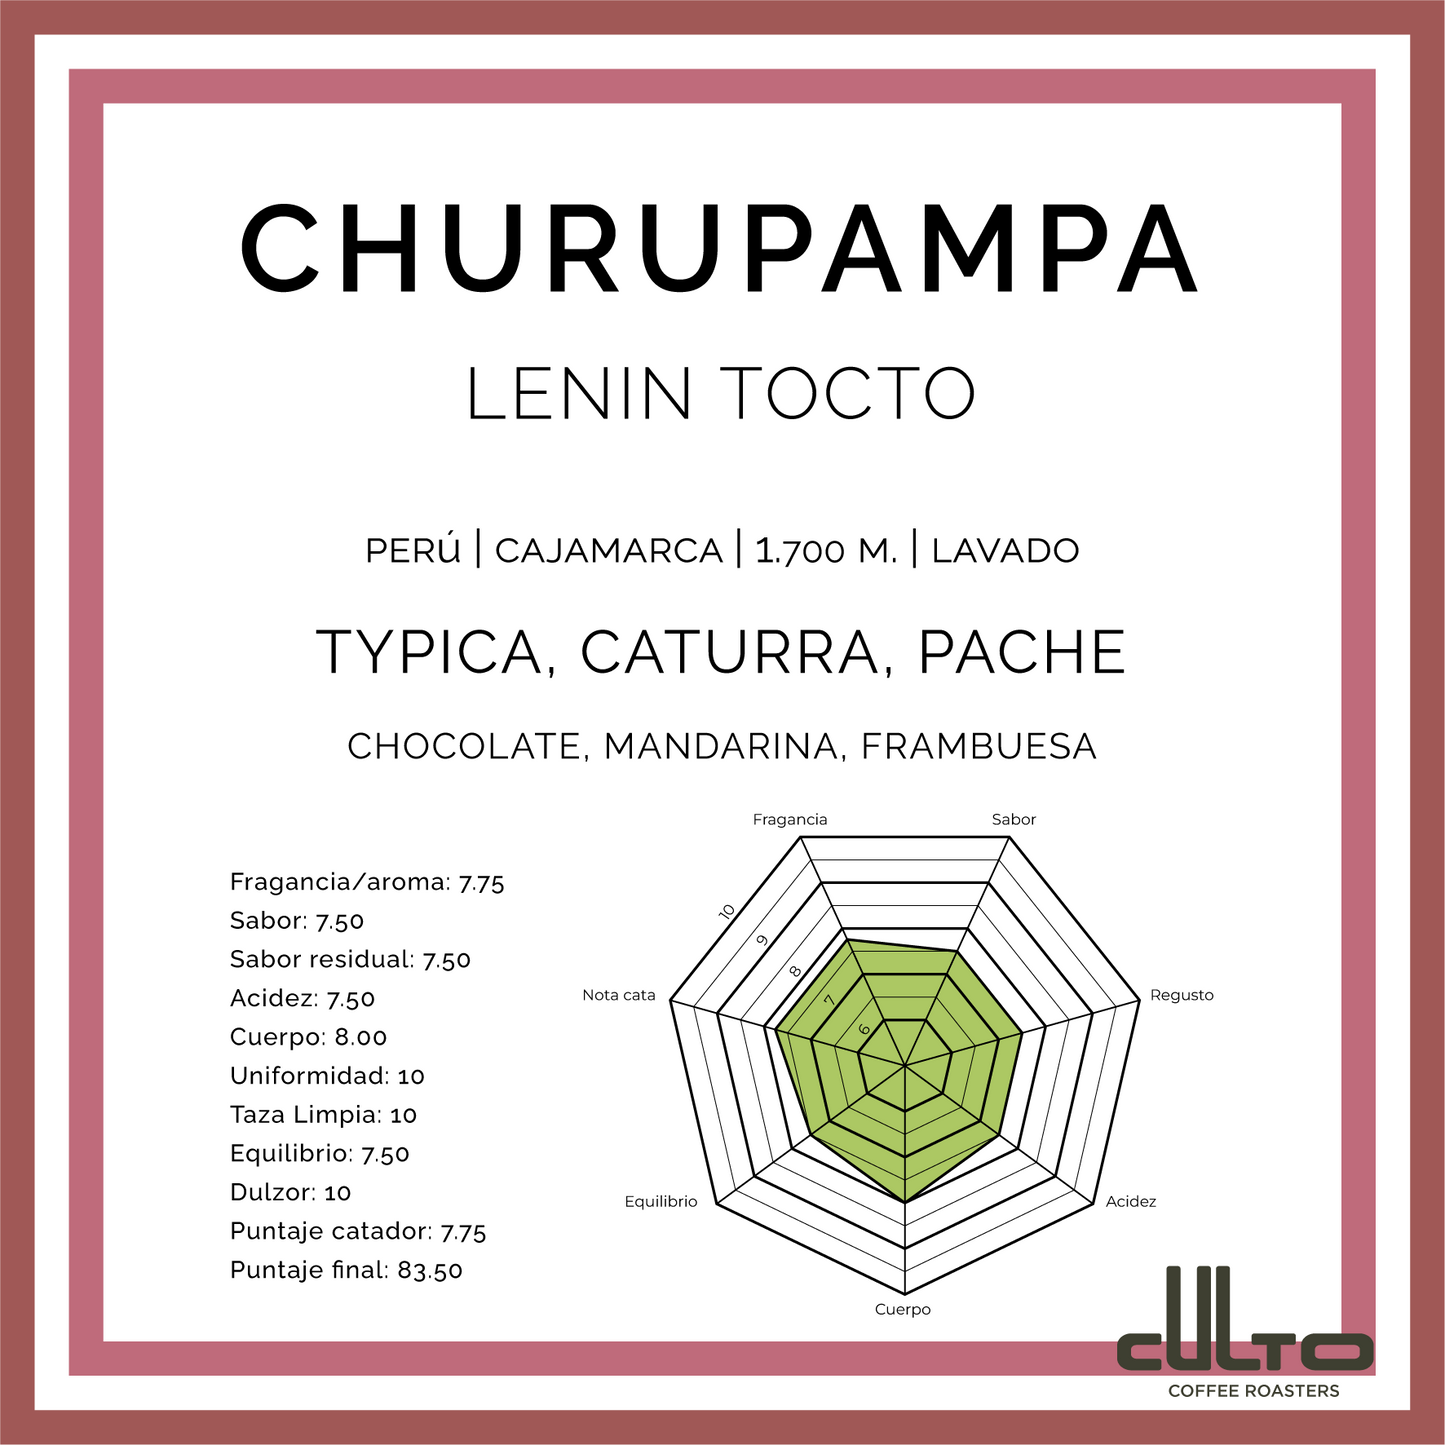 Churupampa - Perú